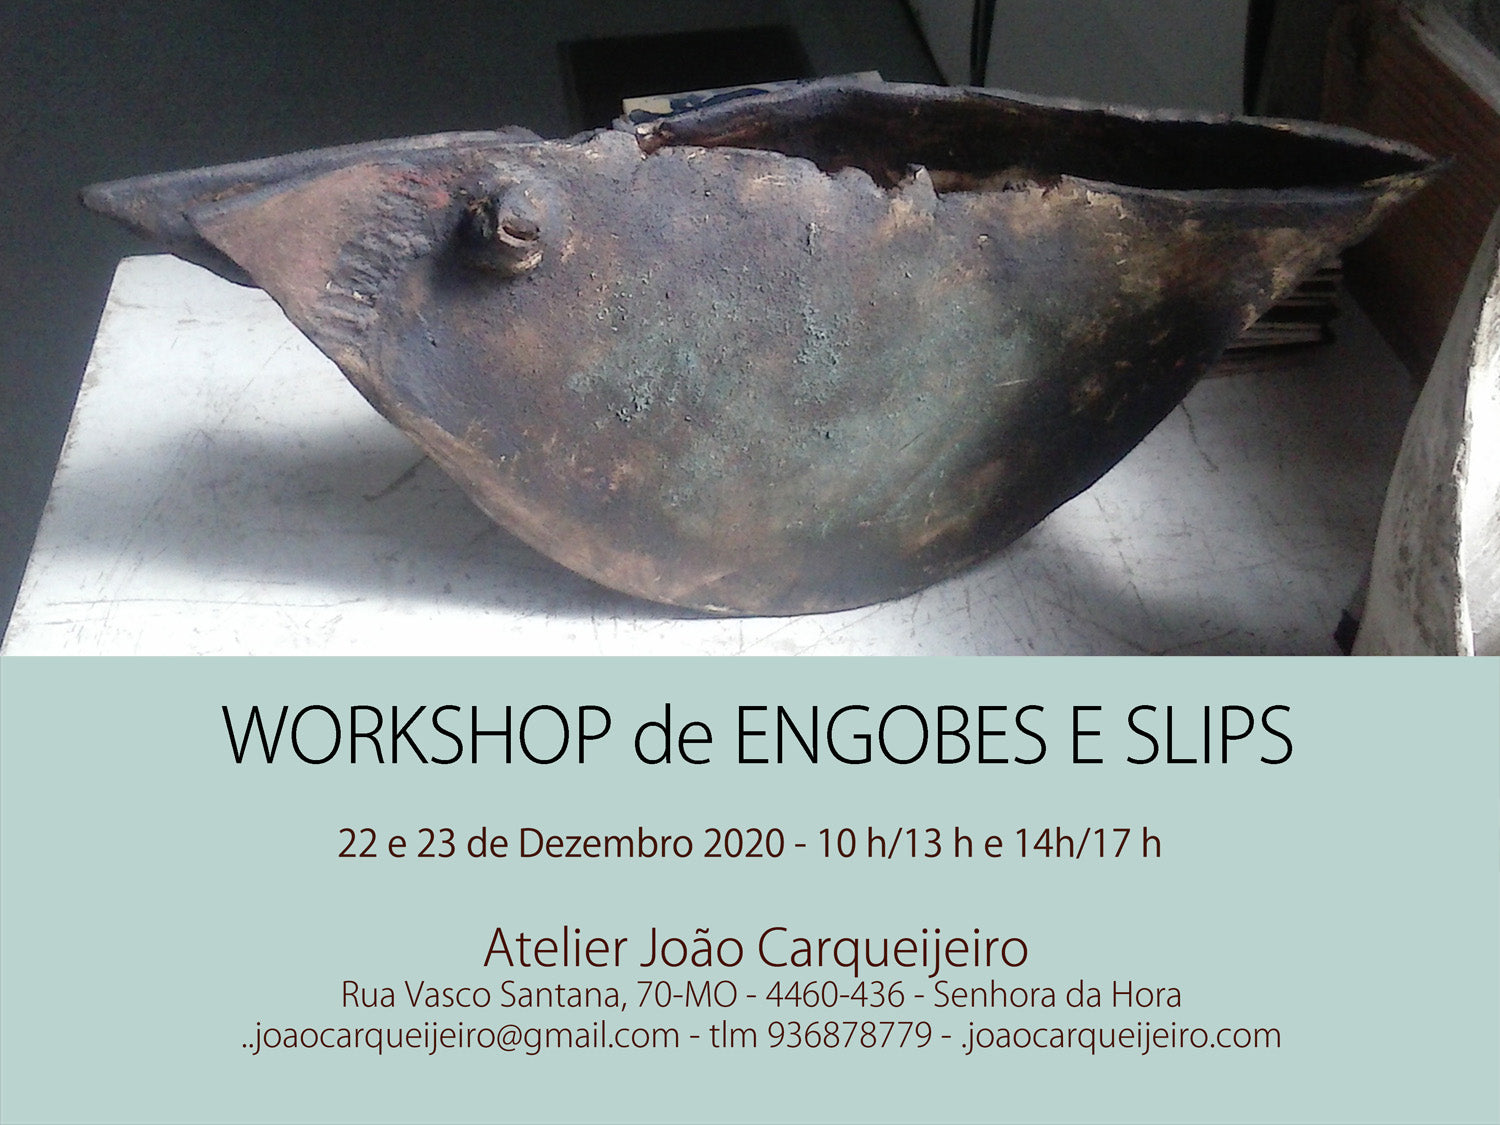 Engobes & Slips Workshop / December 2020 [Open Registrations]